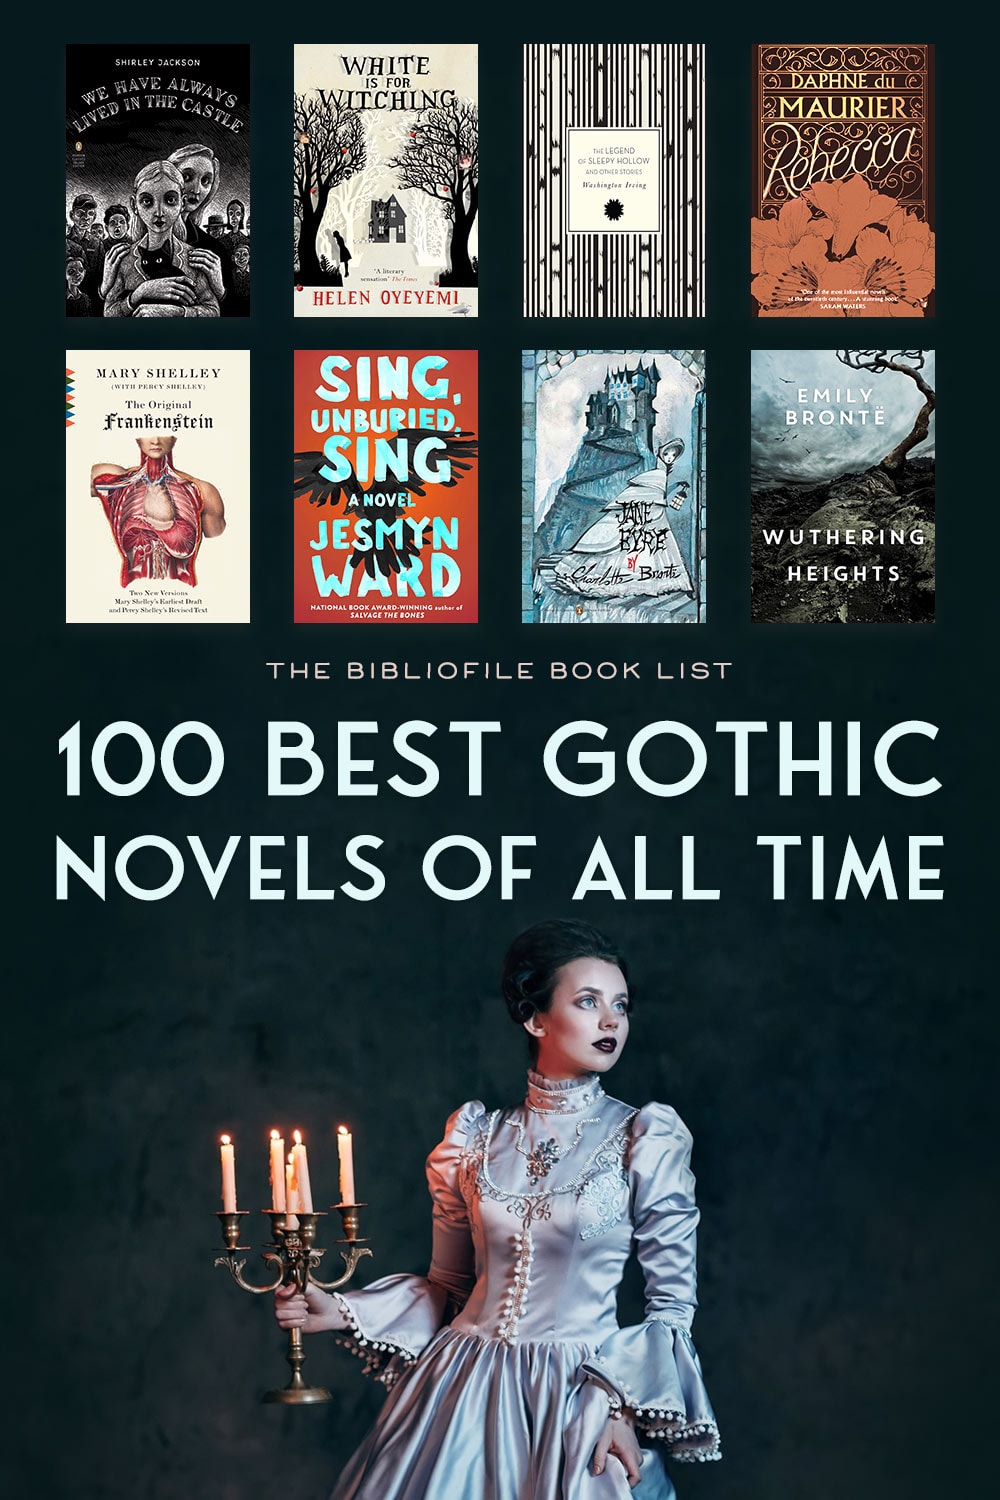 gothic literature list